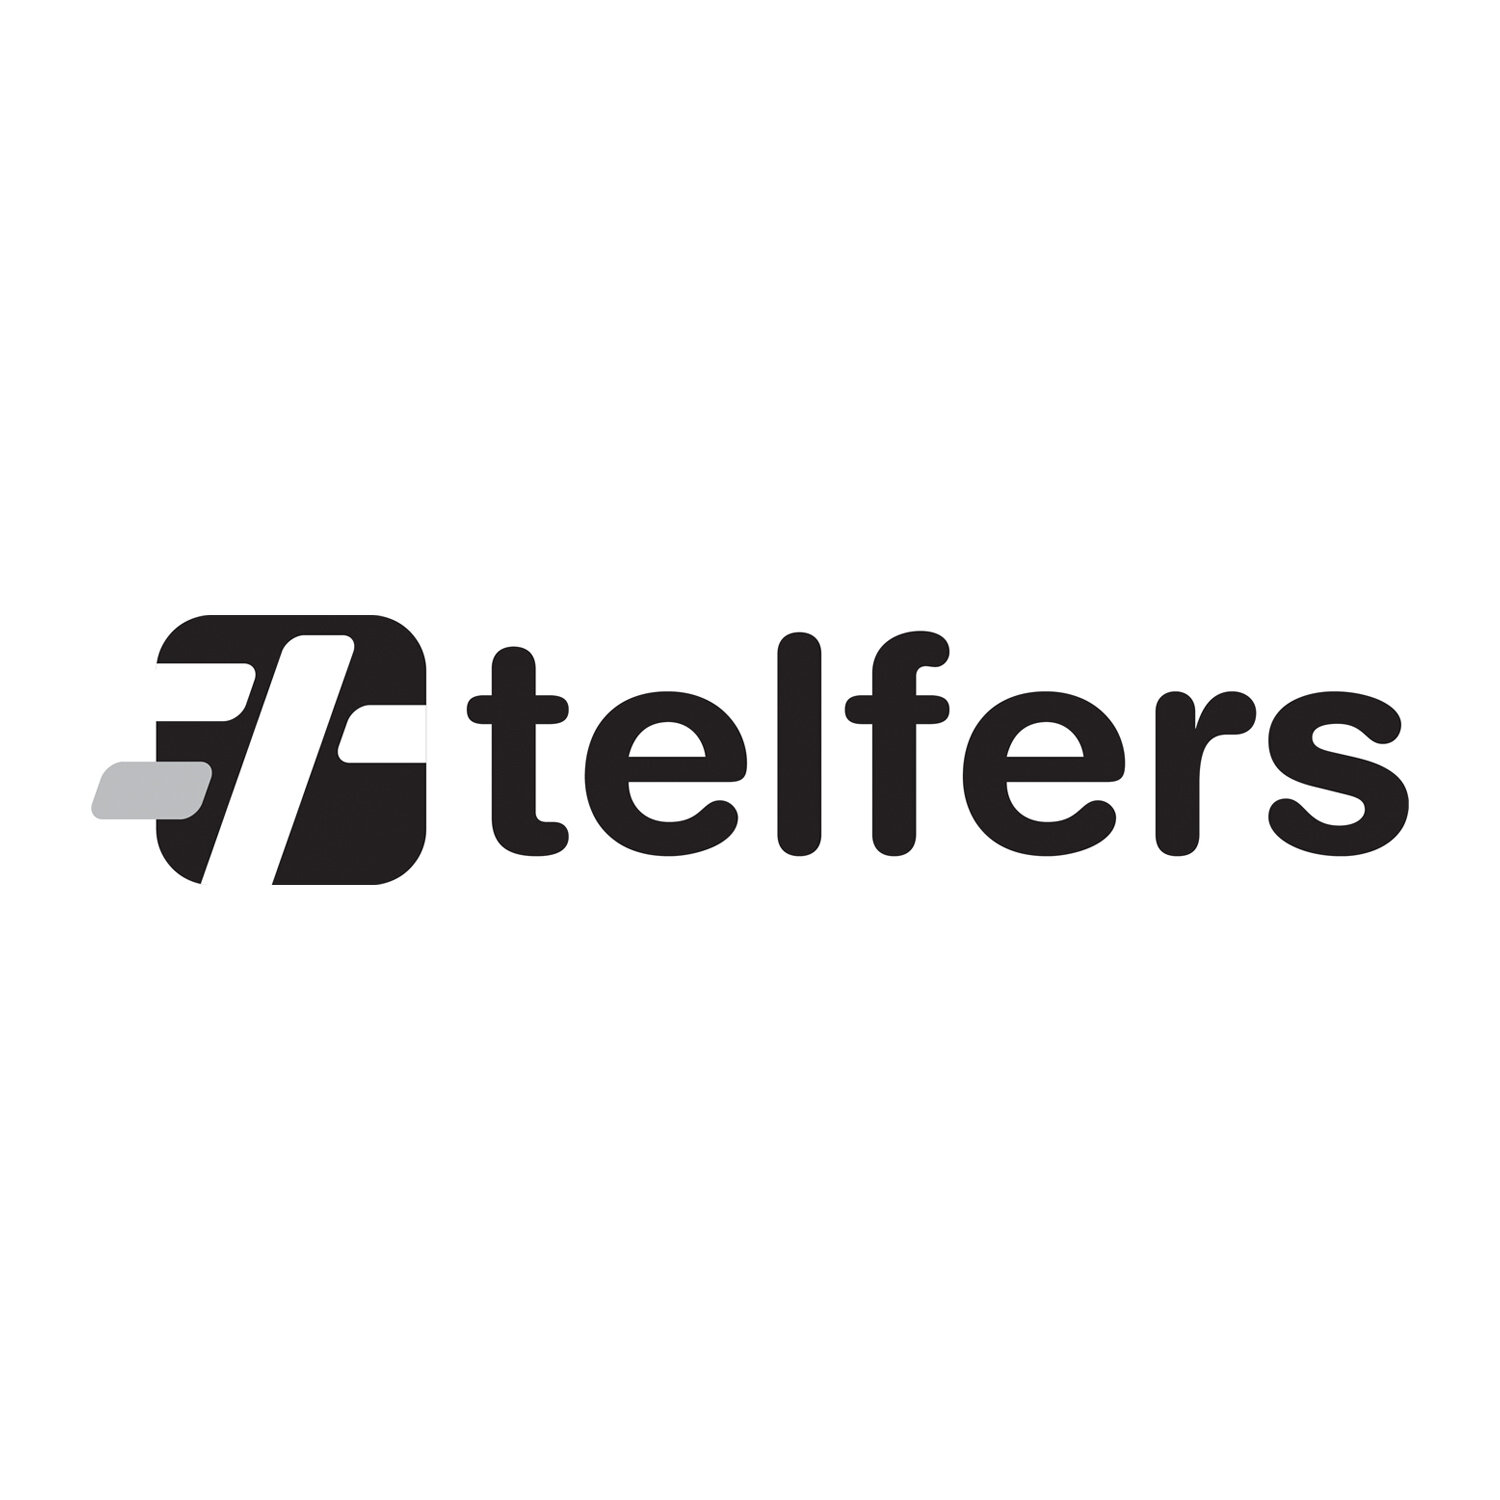 Telfers_logo.jpg